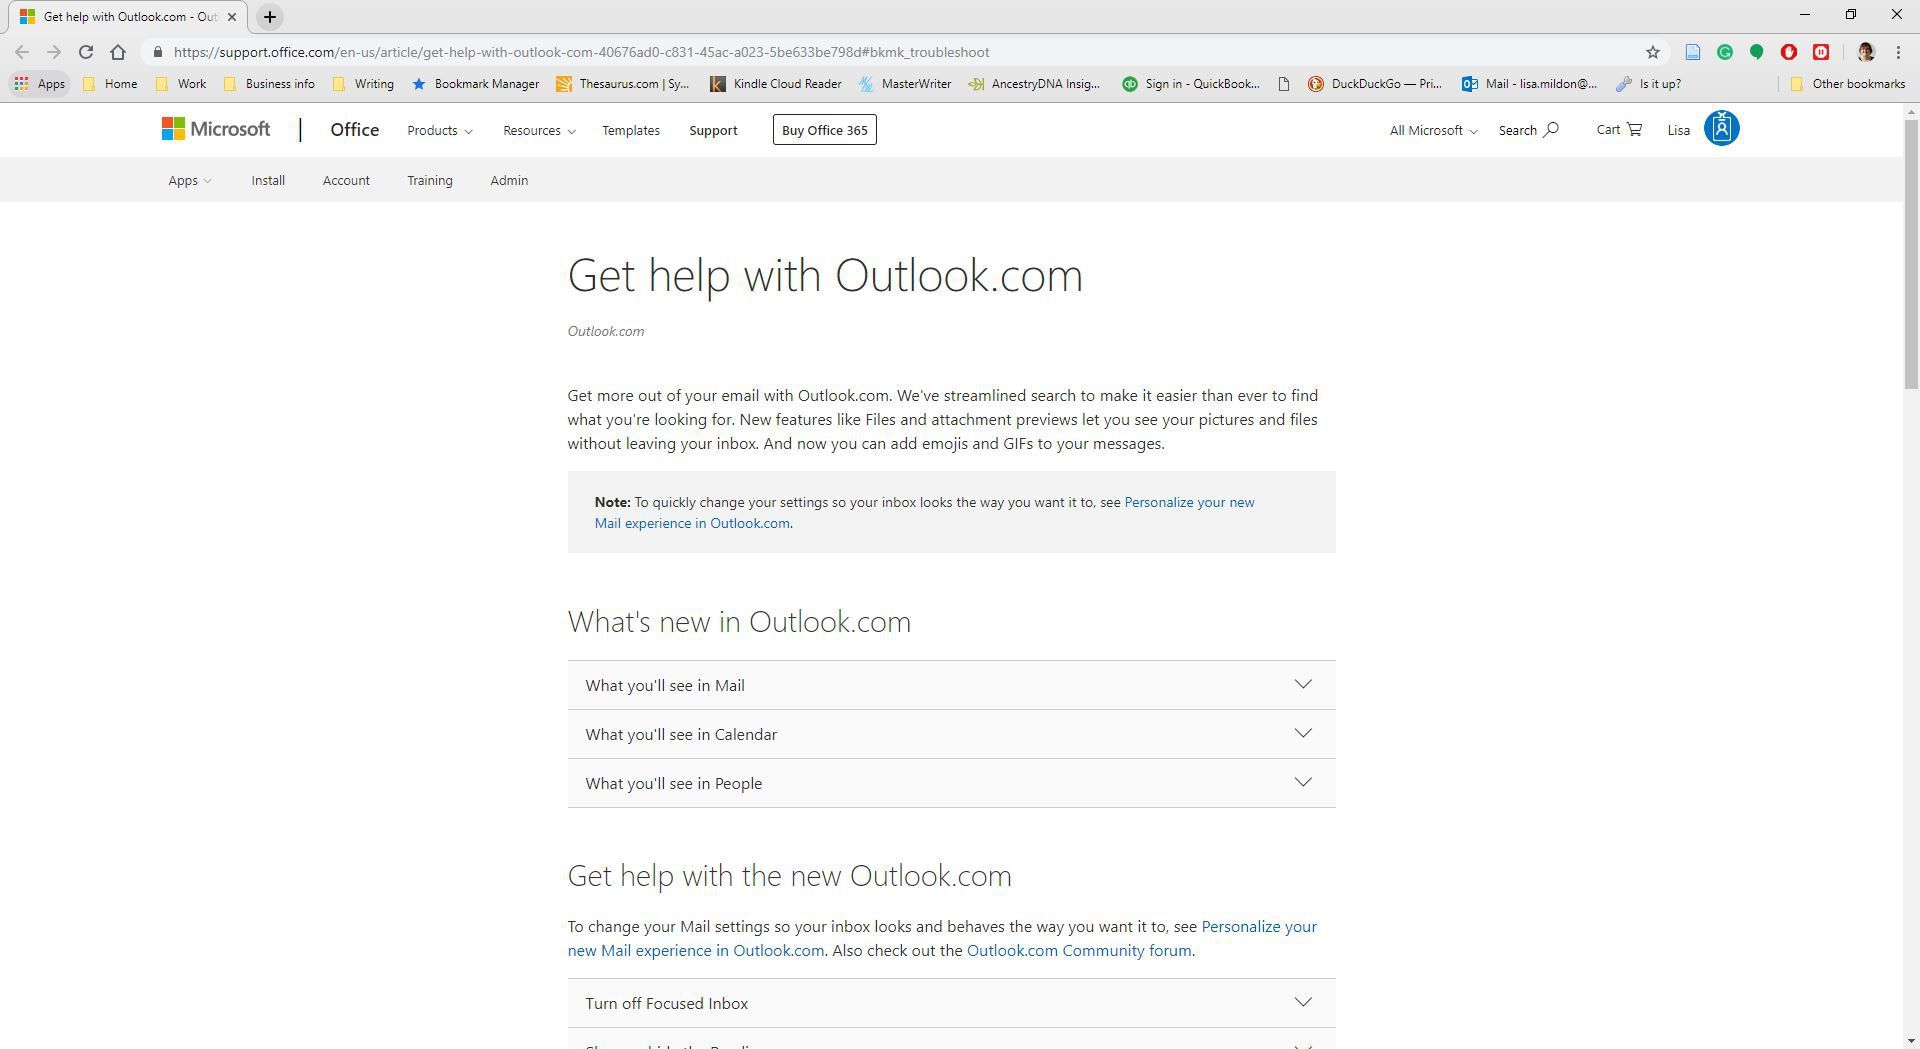 Outlook.com's help website.